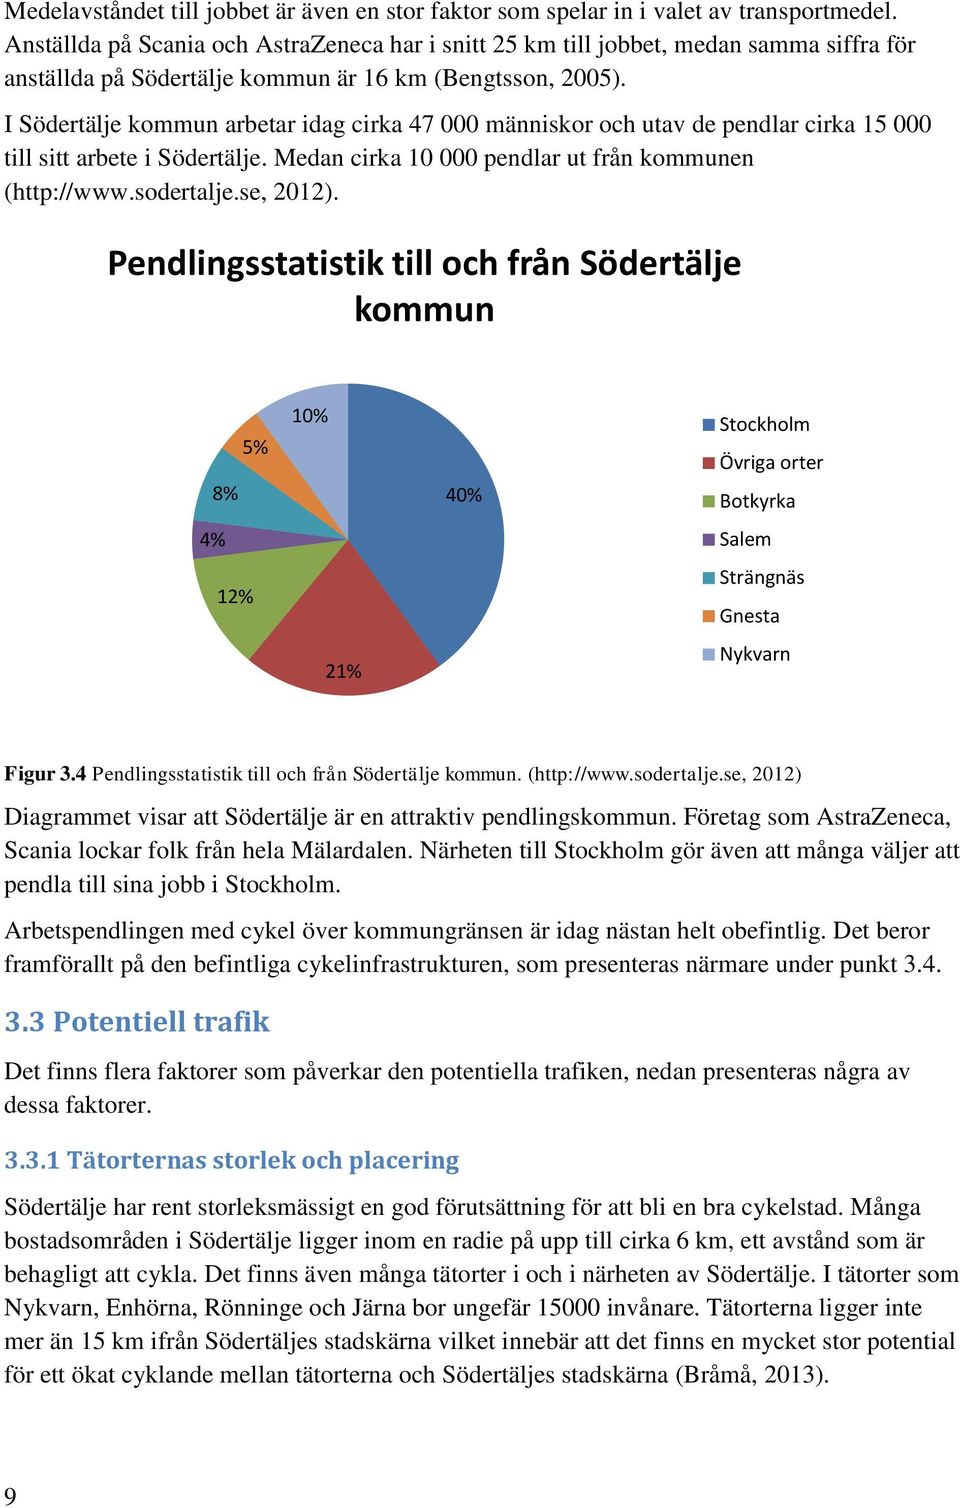 I Södertälje kommun arbetar idag cirka 47 000 människor och utav de pendlar cirka 15 000 till sitt arbete i Södertälje. Medan cirka 10 000 pendlar ut från kommunen (http://www.sodertalje.se, 2012).